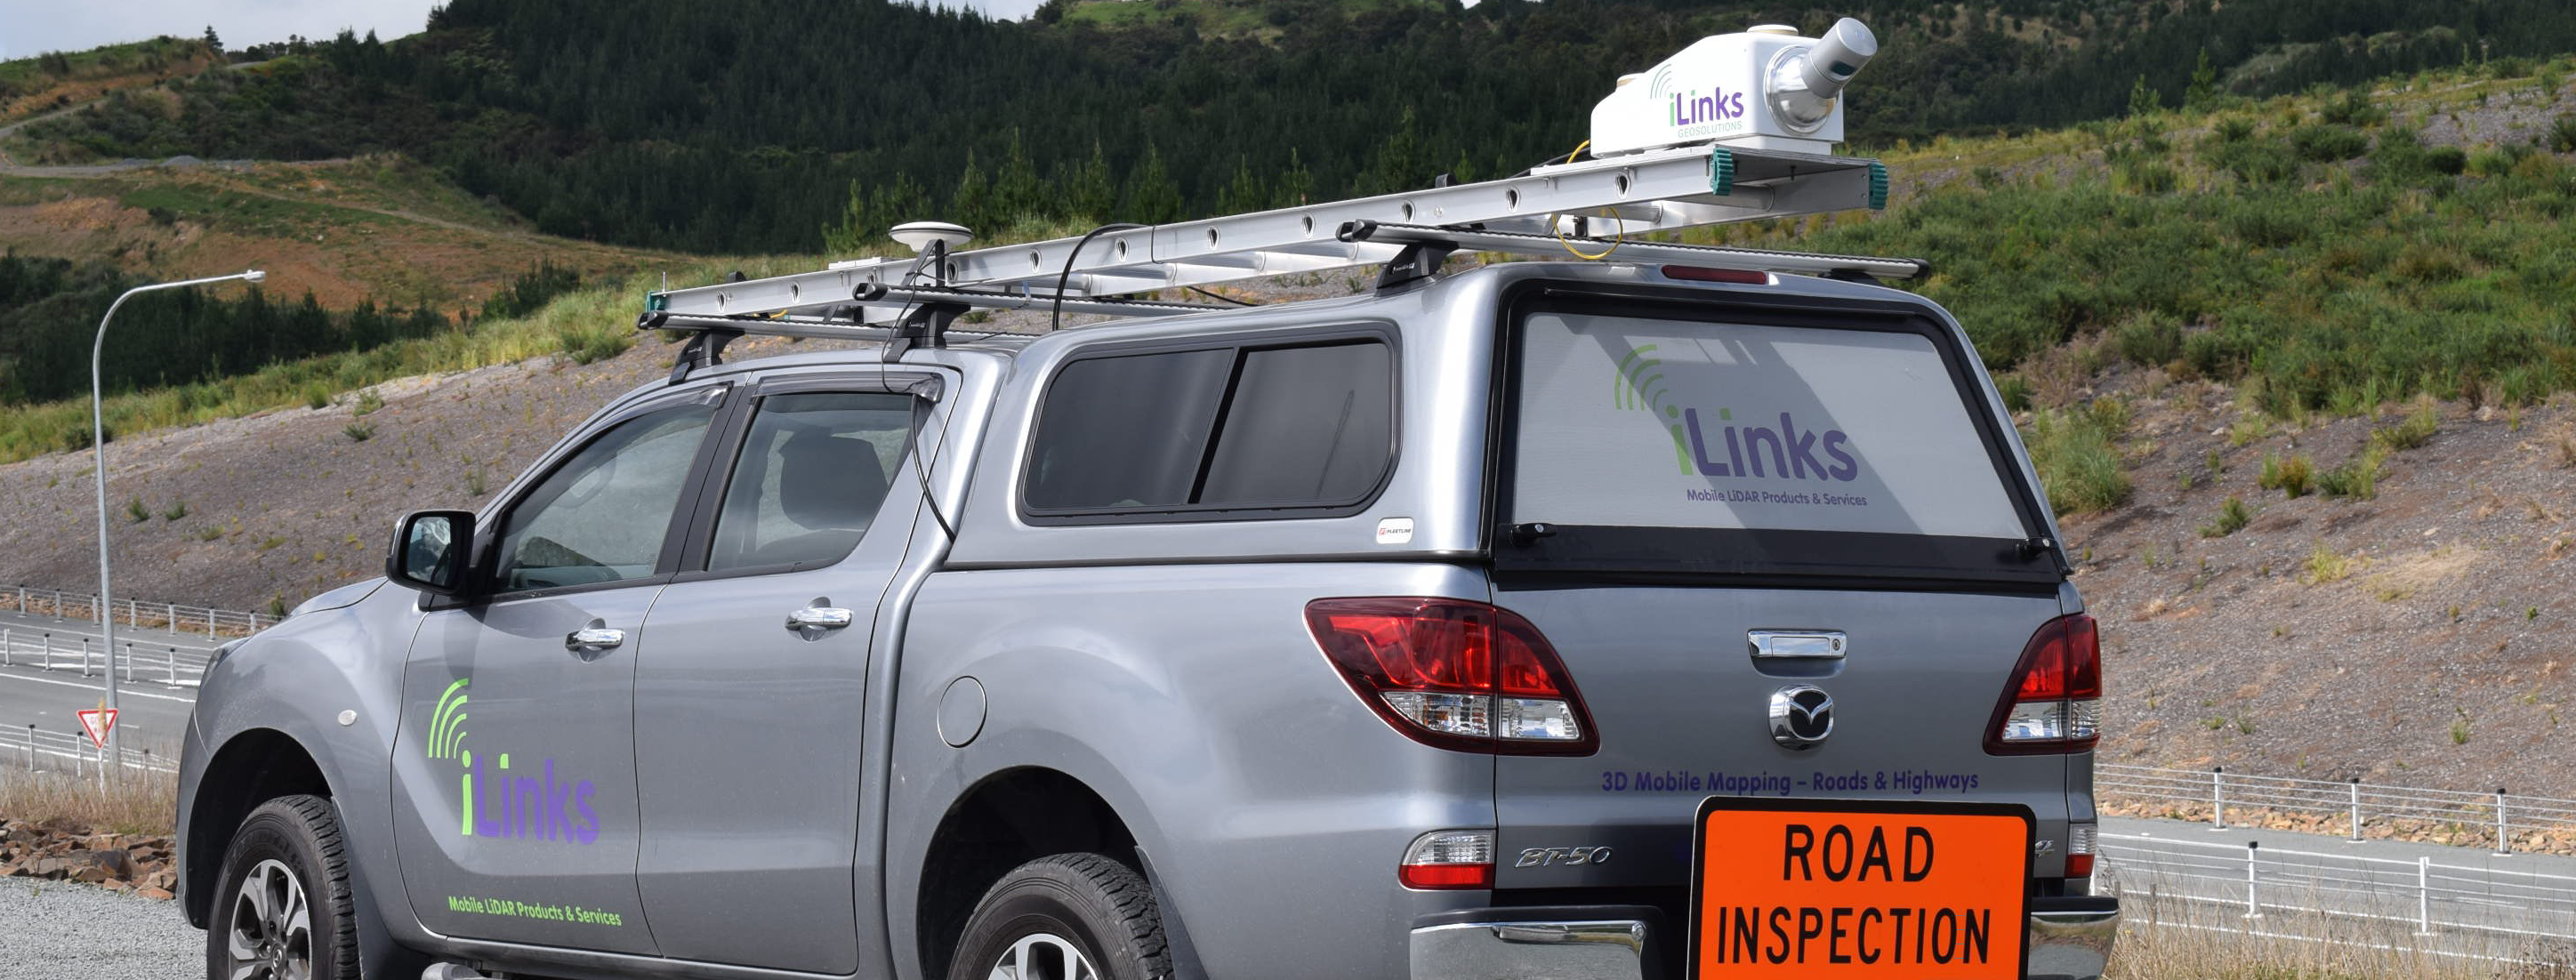 ILinks Road Survey Vehicle